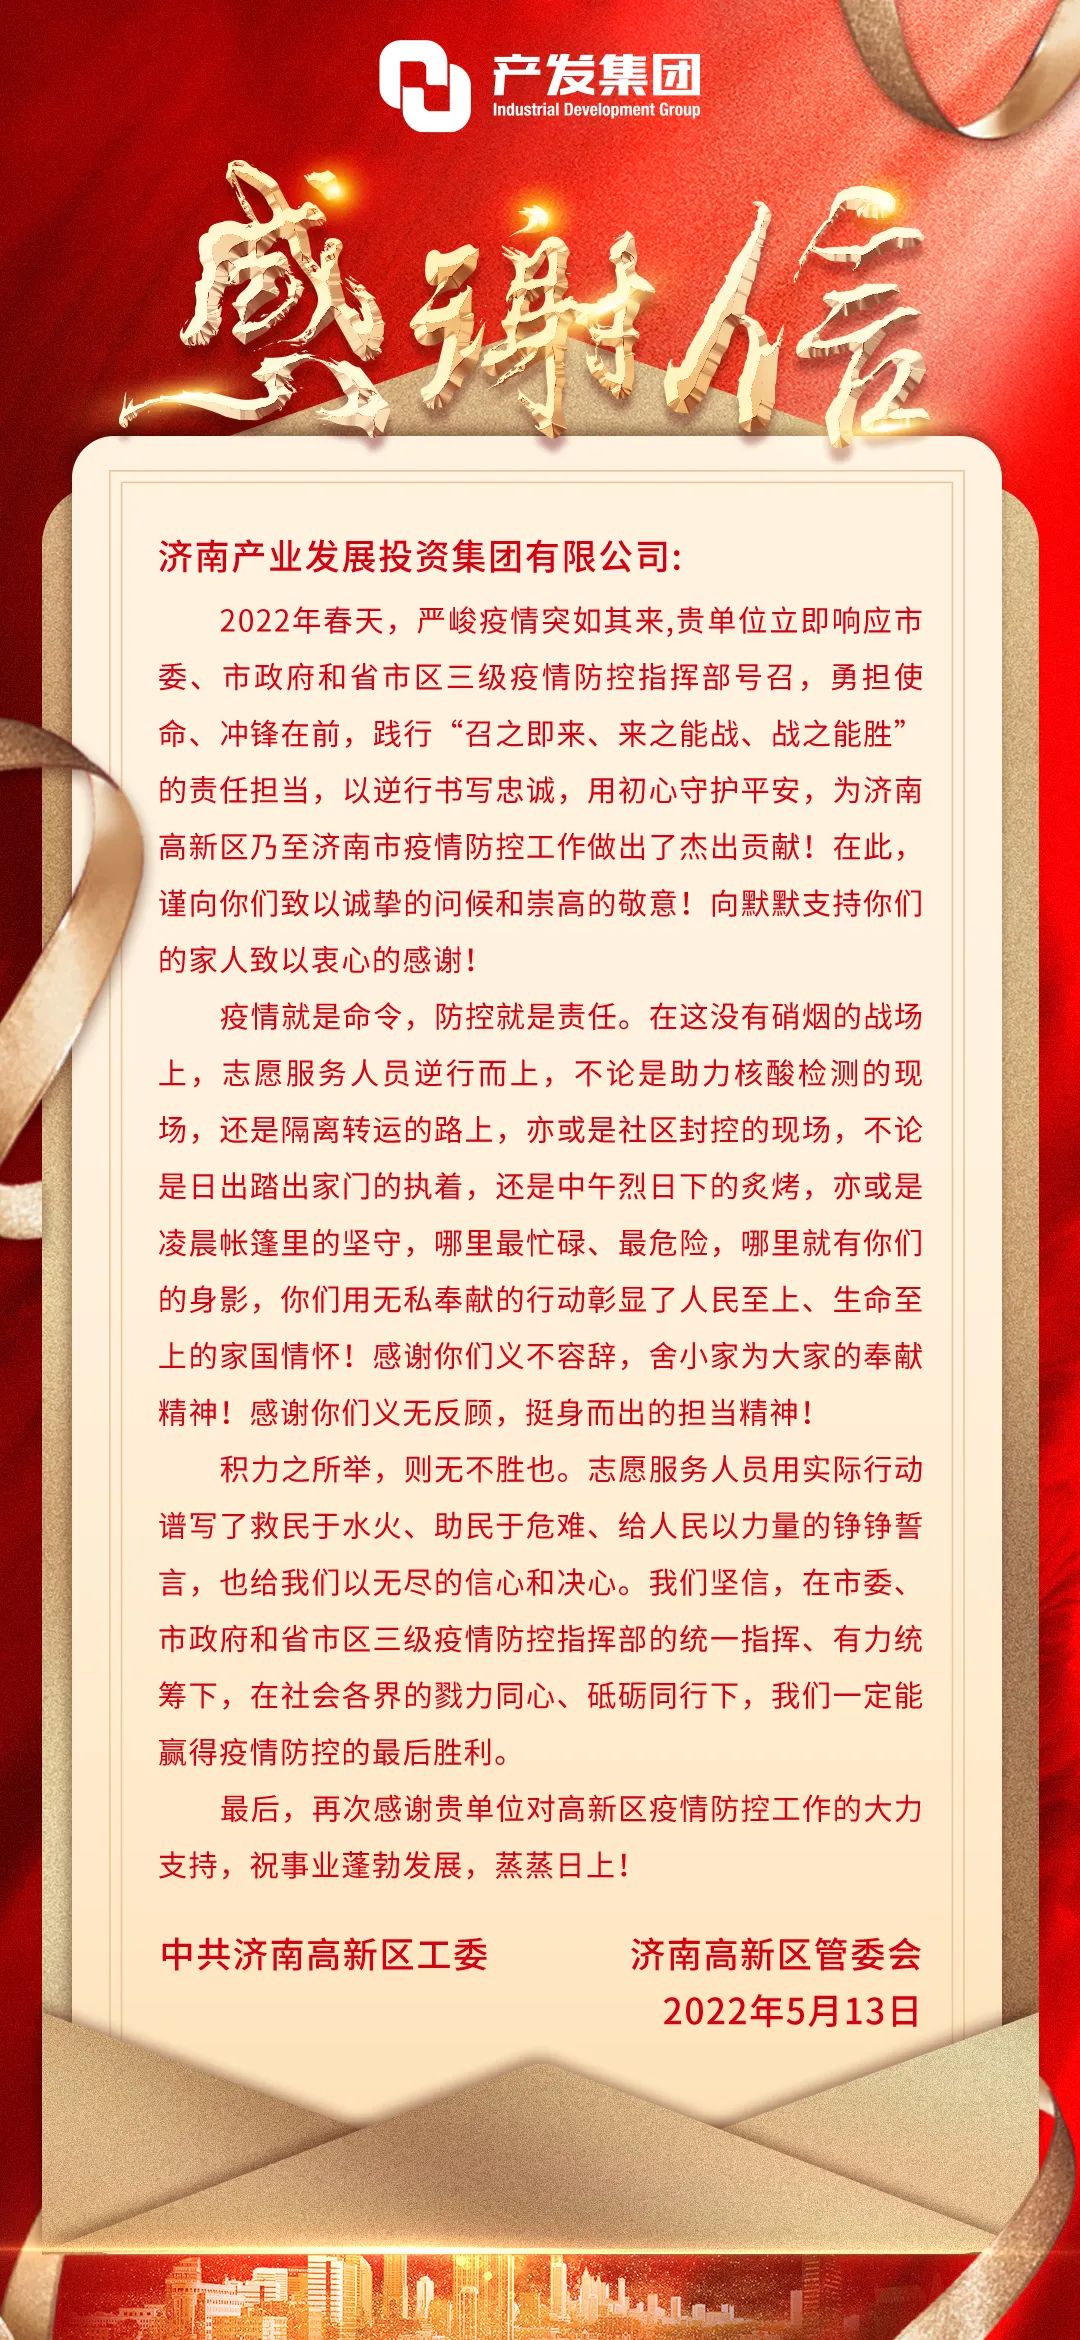 济高控股集团党委副书记张玉平一行到访济南产发集团并送上感谢信